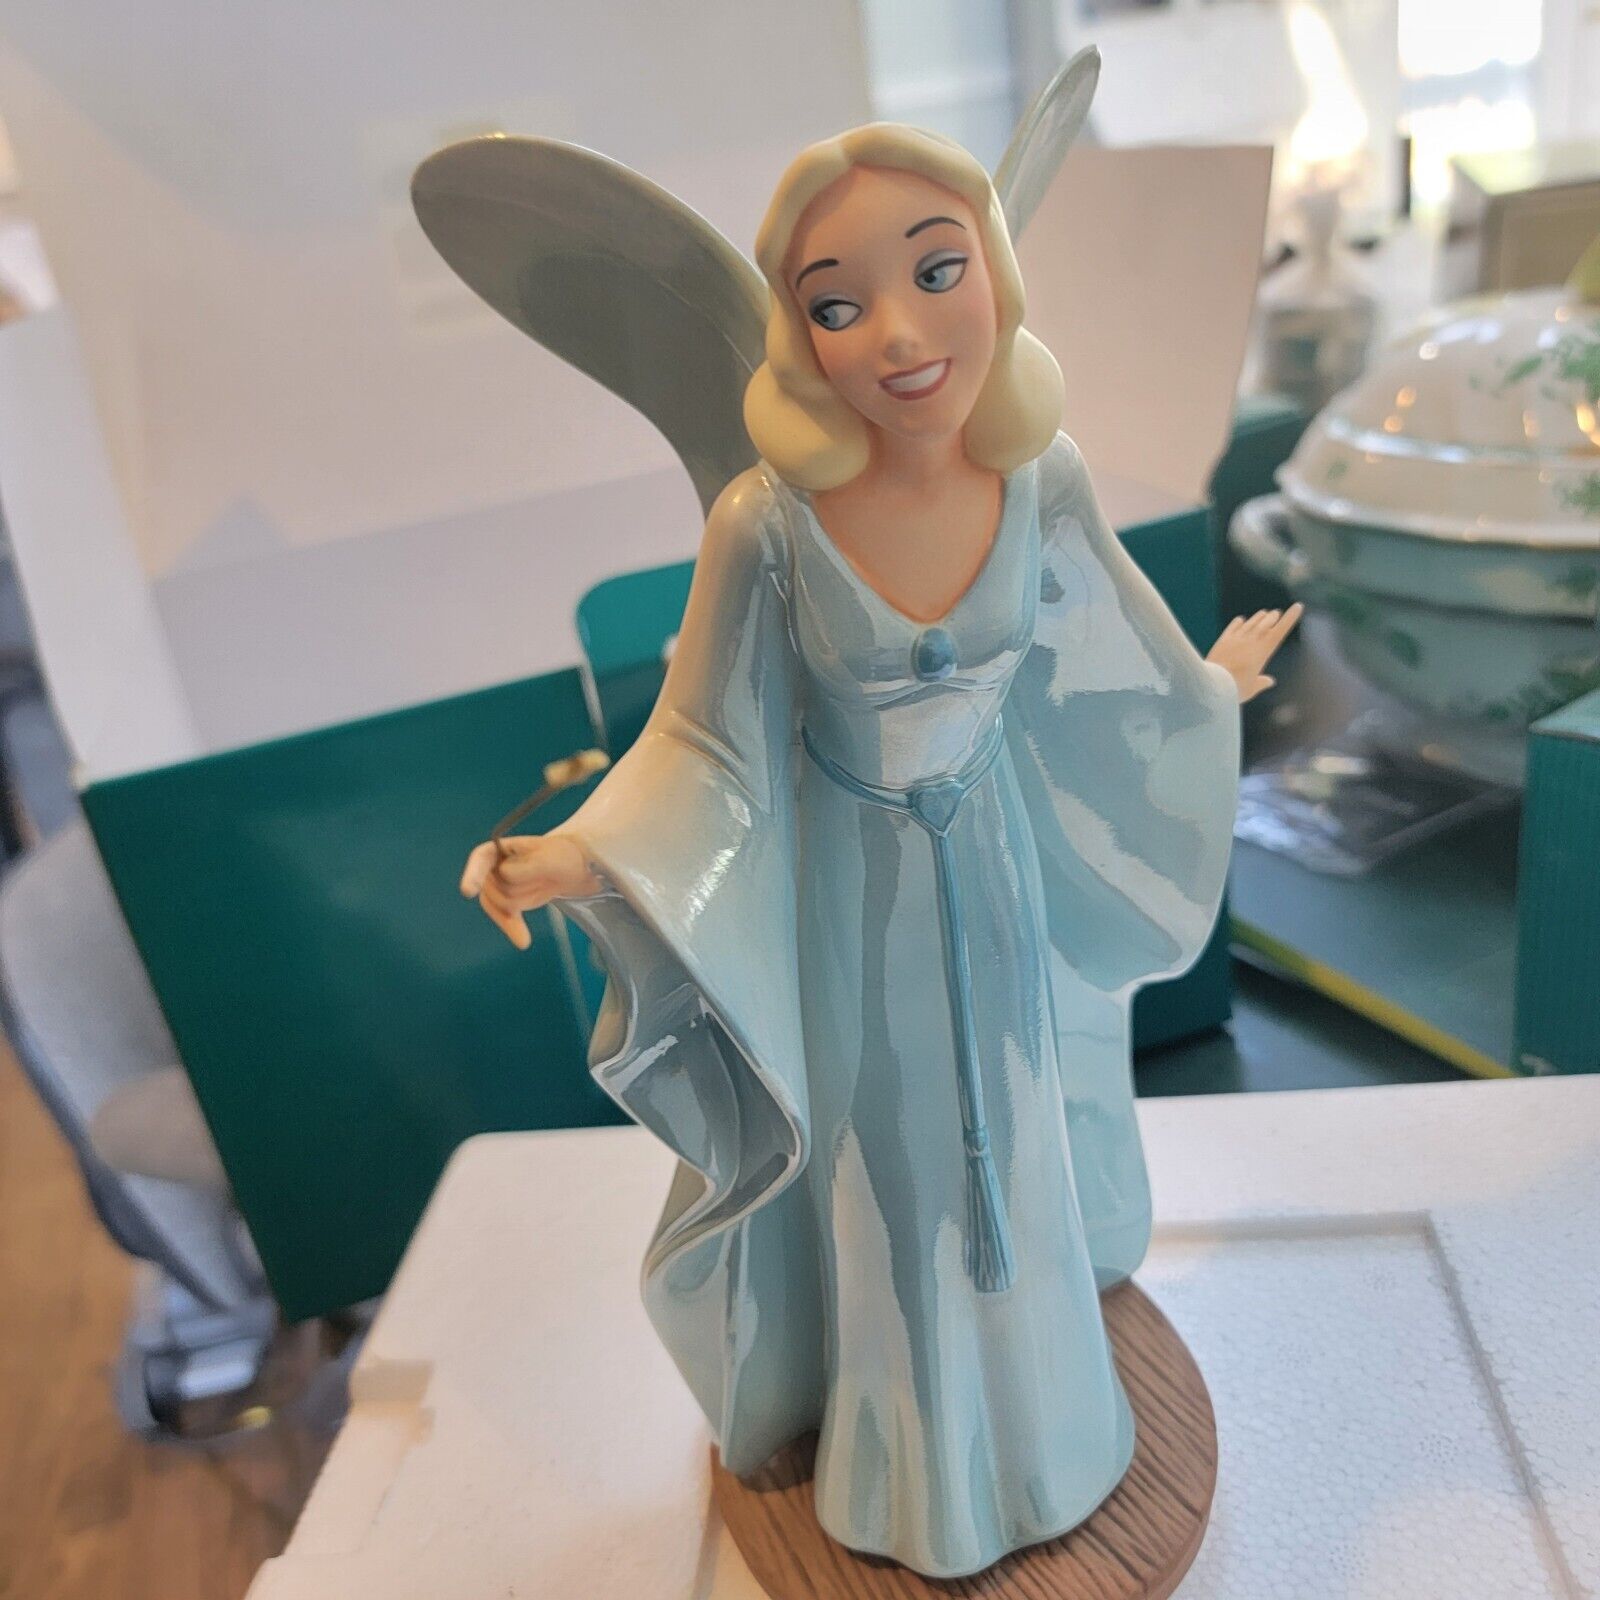 Disney WDCC Pinocchio The Blue Fairy Making Dreams Come True Figurine Box & COA